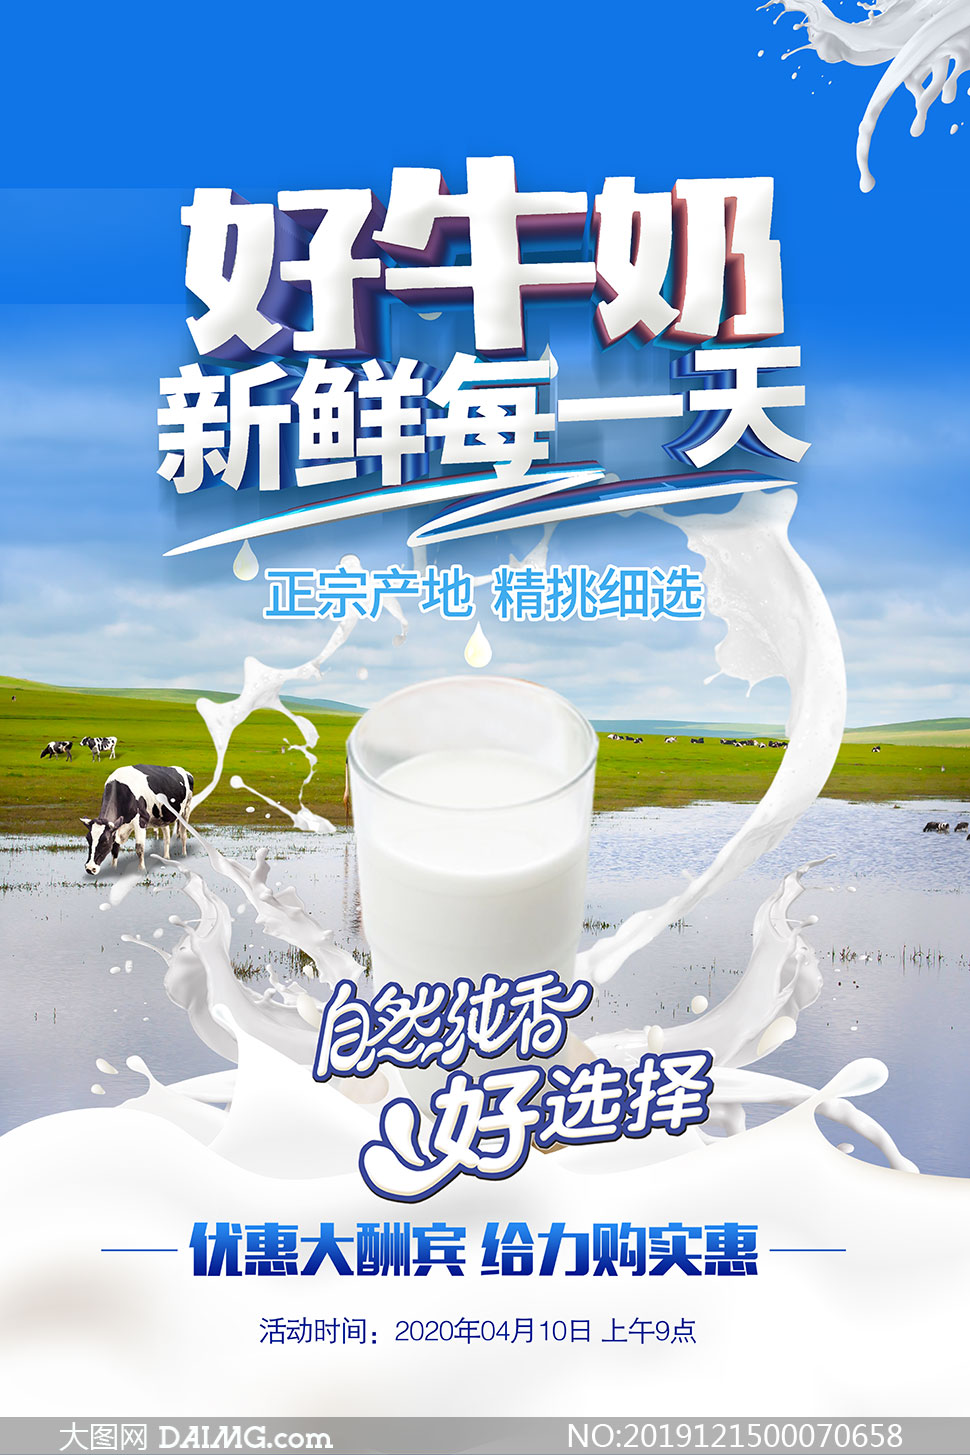 牛奶的创意广告文案图片